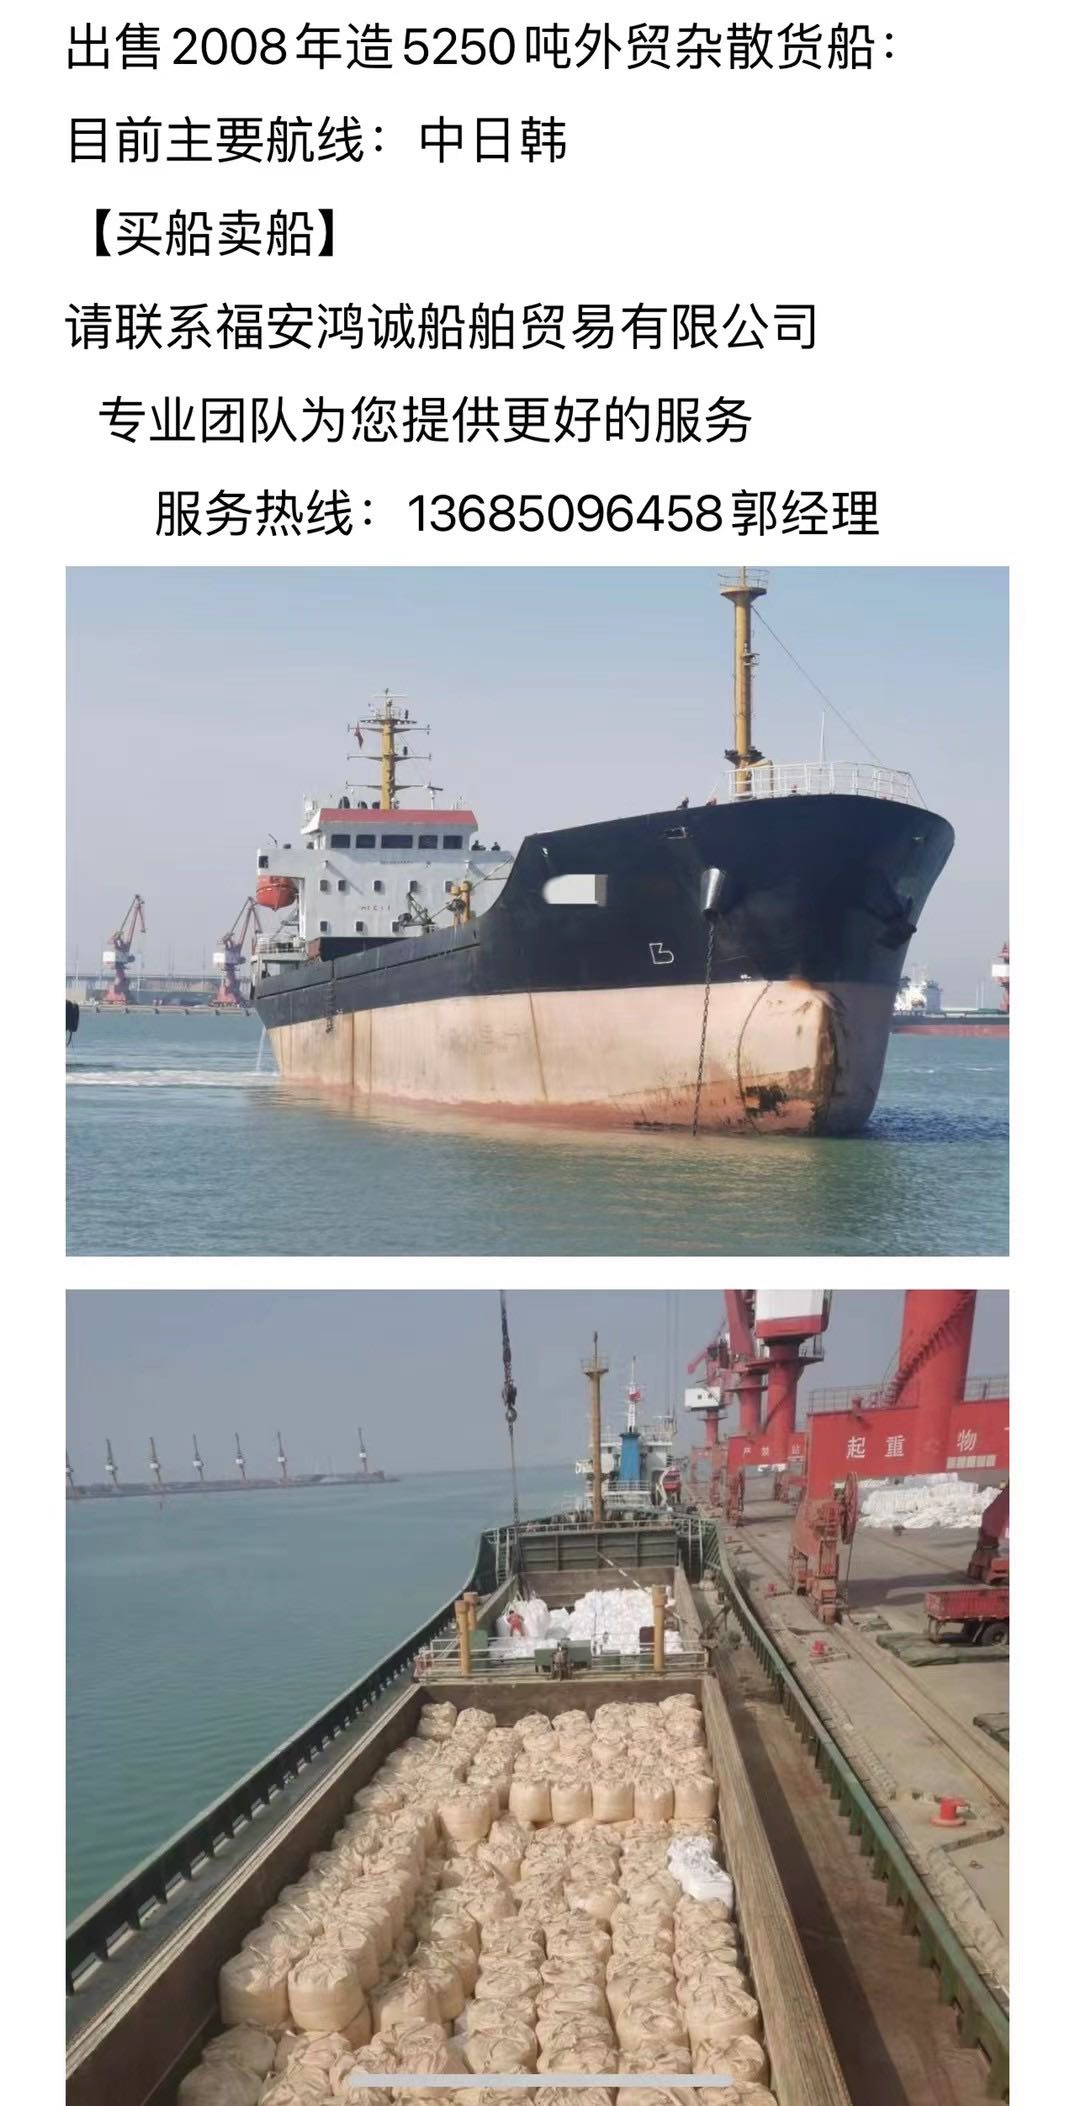 出卖：08年〈三艘〉正在航中贸纯集货船 祸建 宁德市-2.jpg